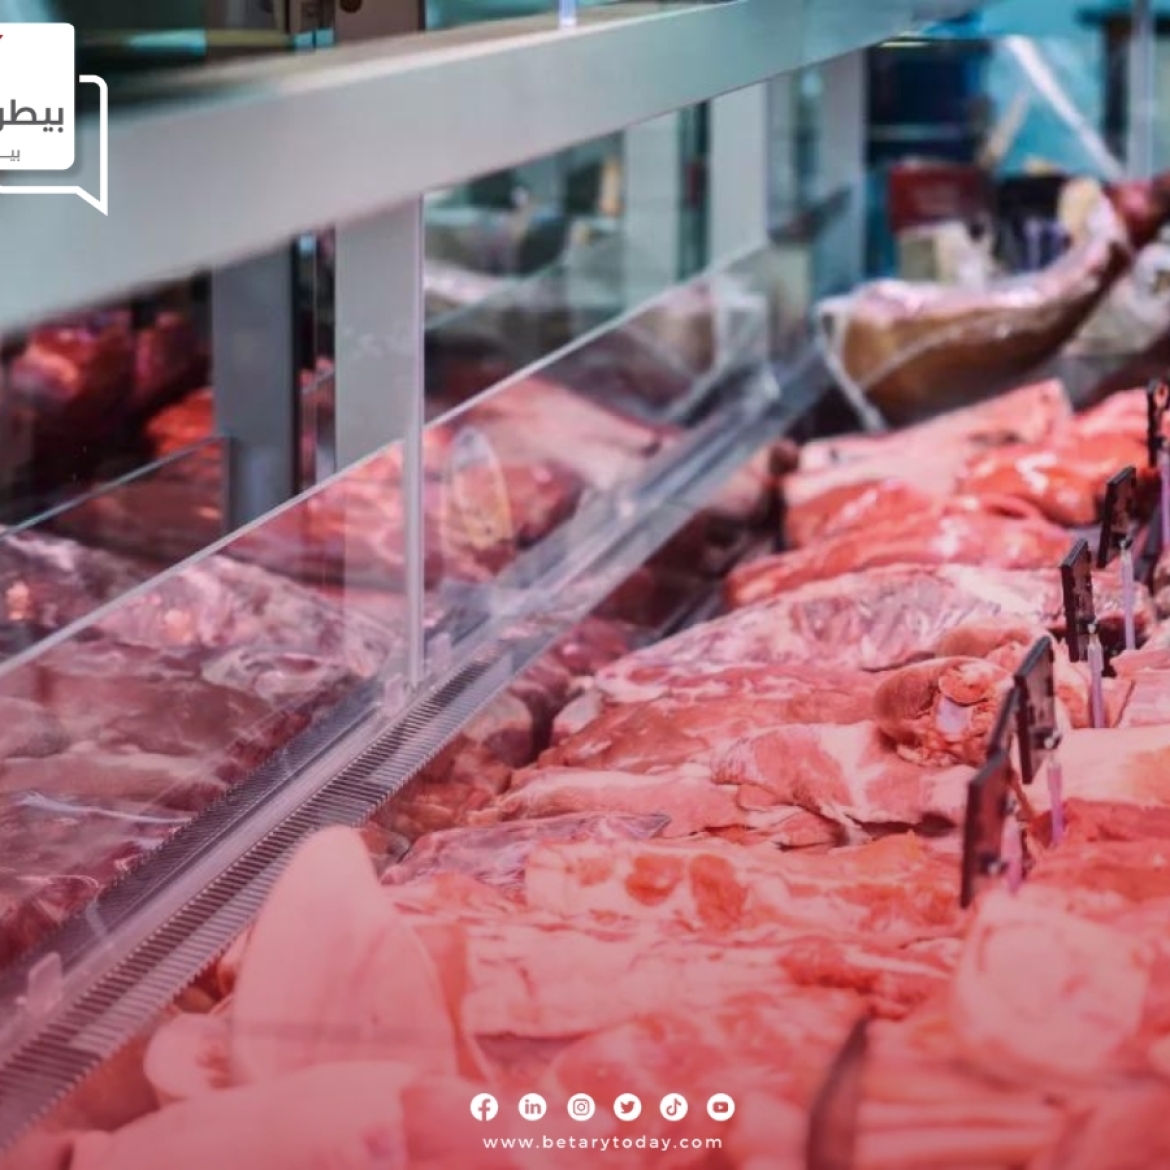 أسعار اللحوم الحمراء البلدي والمستوردة اليوم الثلاثاء 19 مارس في الأسواق